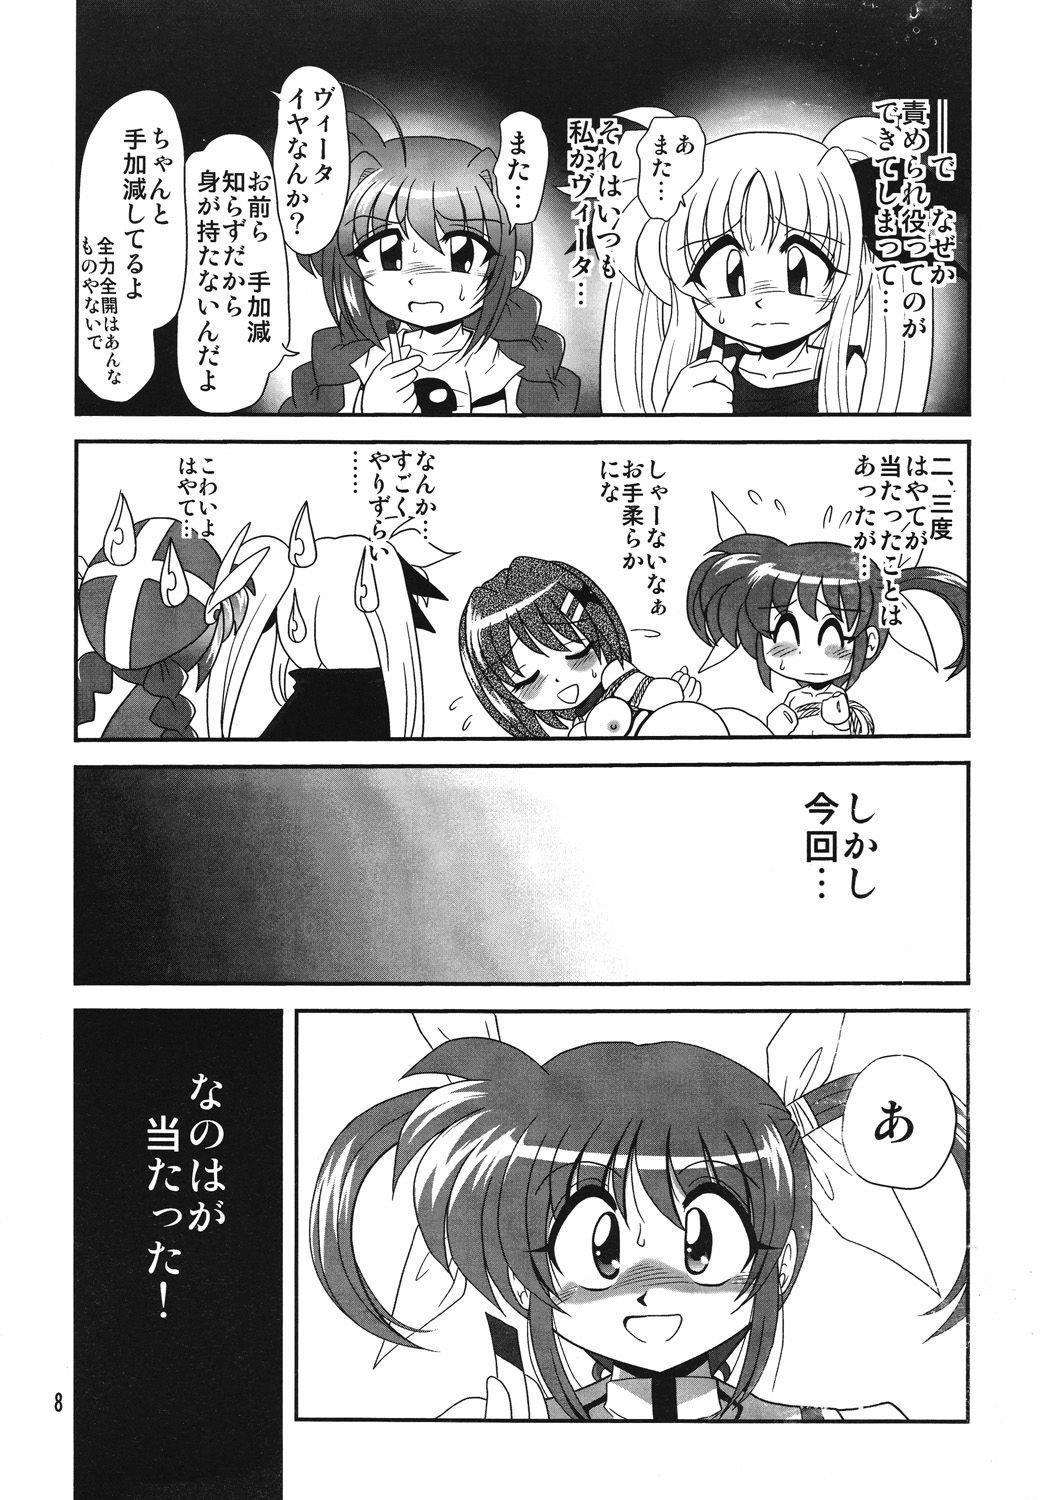 [Thirty Saver Street 2D Shooting] Storage Ignition 4 (Mahou Shoujo Lyrical Nanoha / Magical Girl Lyrical Nanoha) page 7 full